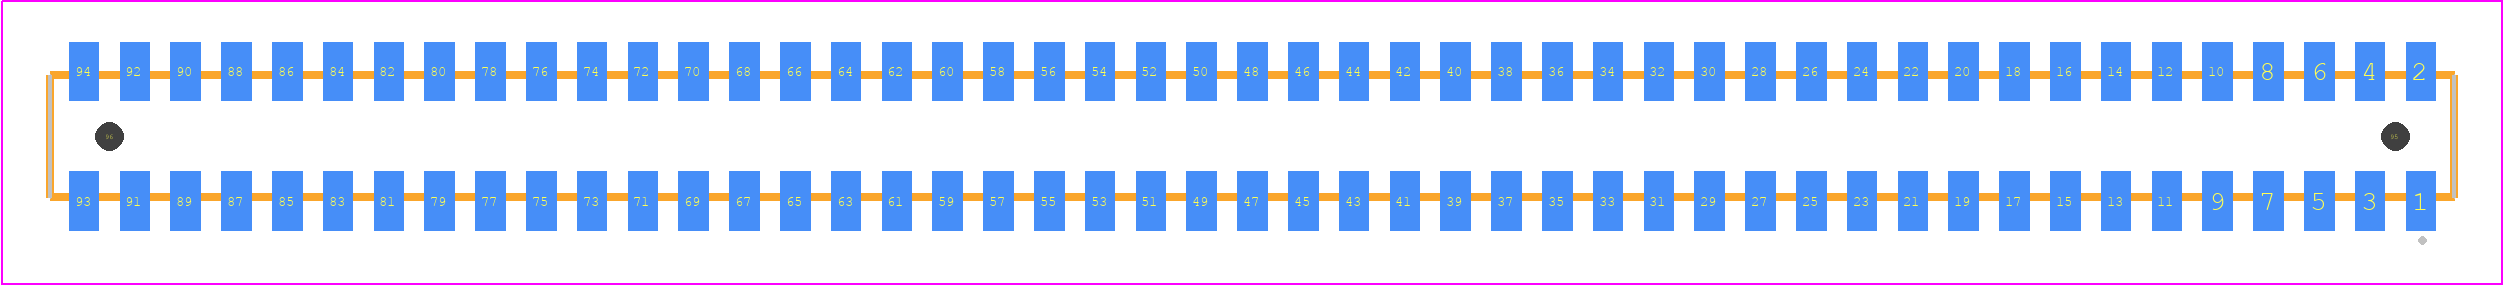 CLP-147-02-H-D-A - SAMTEC PCB footprint - Other - Other - CLP-147-02-XXX-D-A